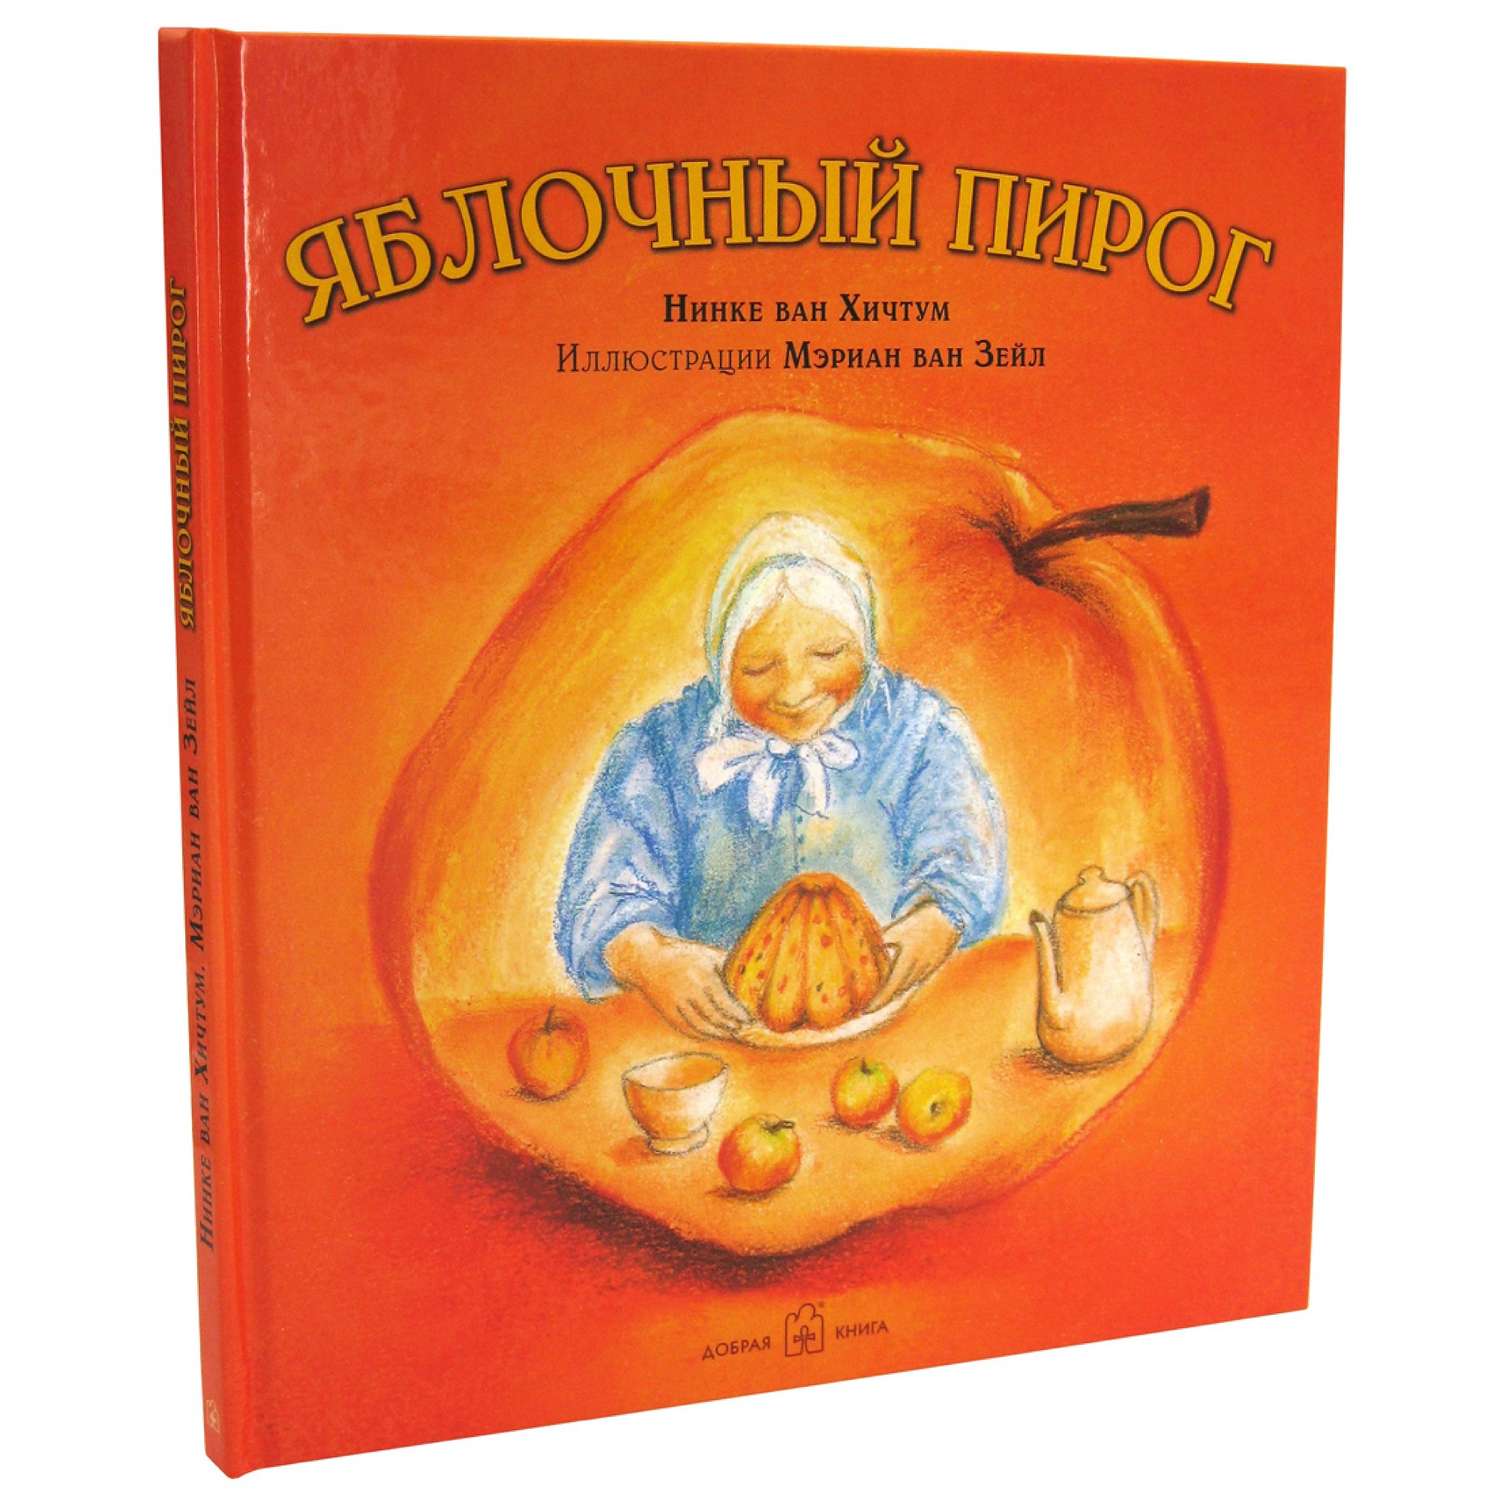 Книга Добрая книга Яблочный пирог. Иллюстрации Мэриан ван Зейл - фото 2